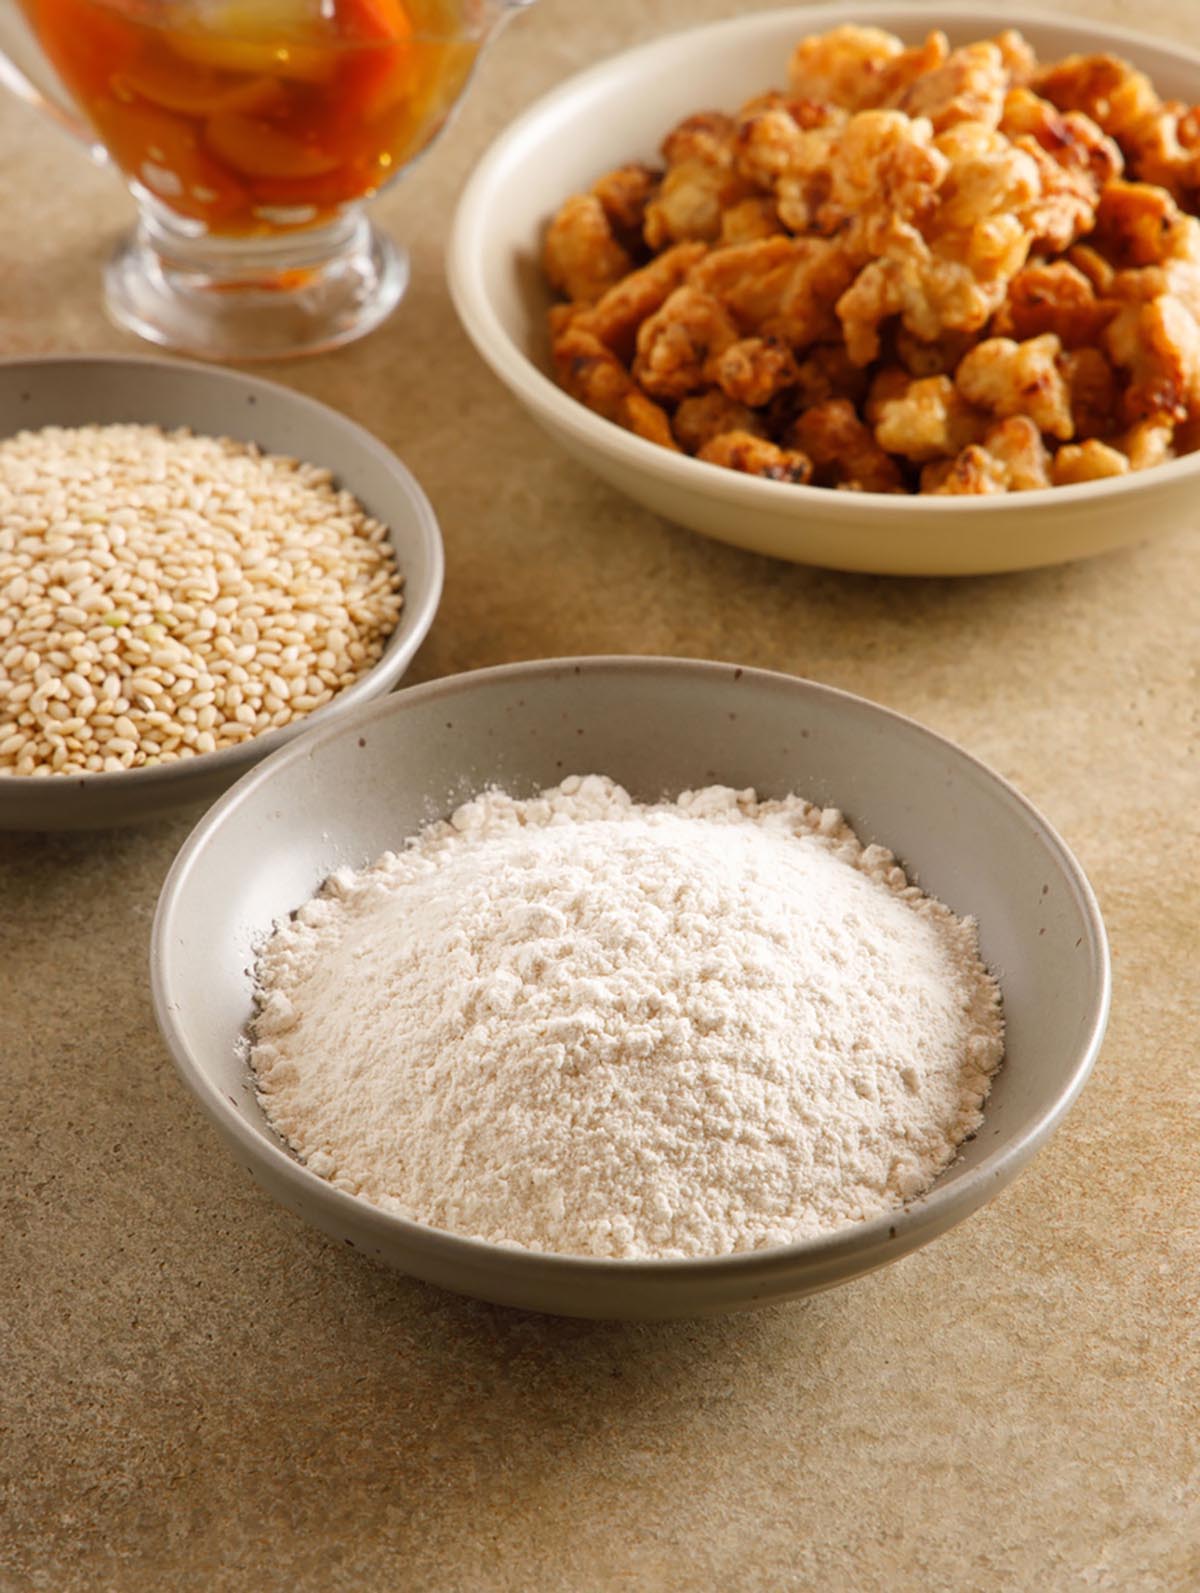 식탁위에 접시 3개가 있다. 유기농 현미찹쌀, 쌀가루, 탕수육 요리가 각각 담겨져 있다.